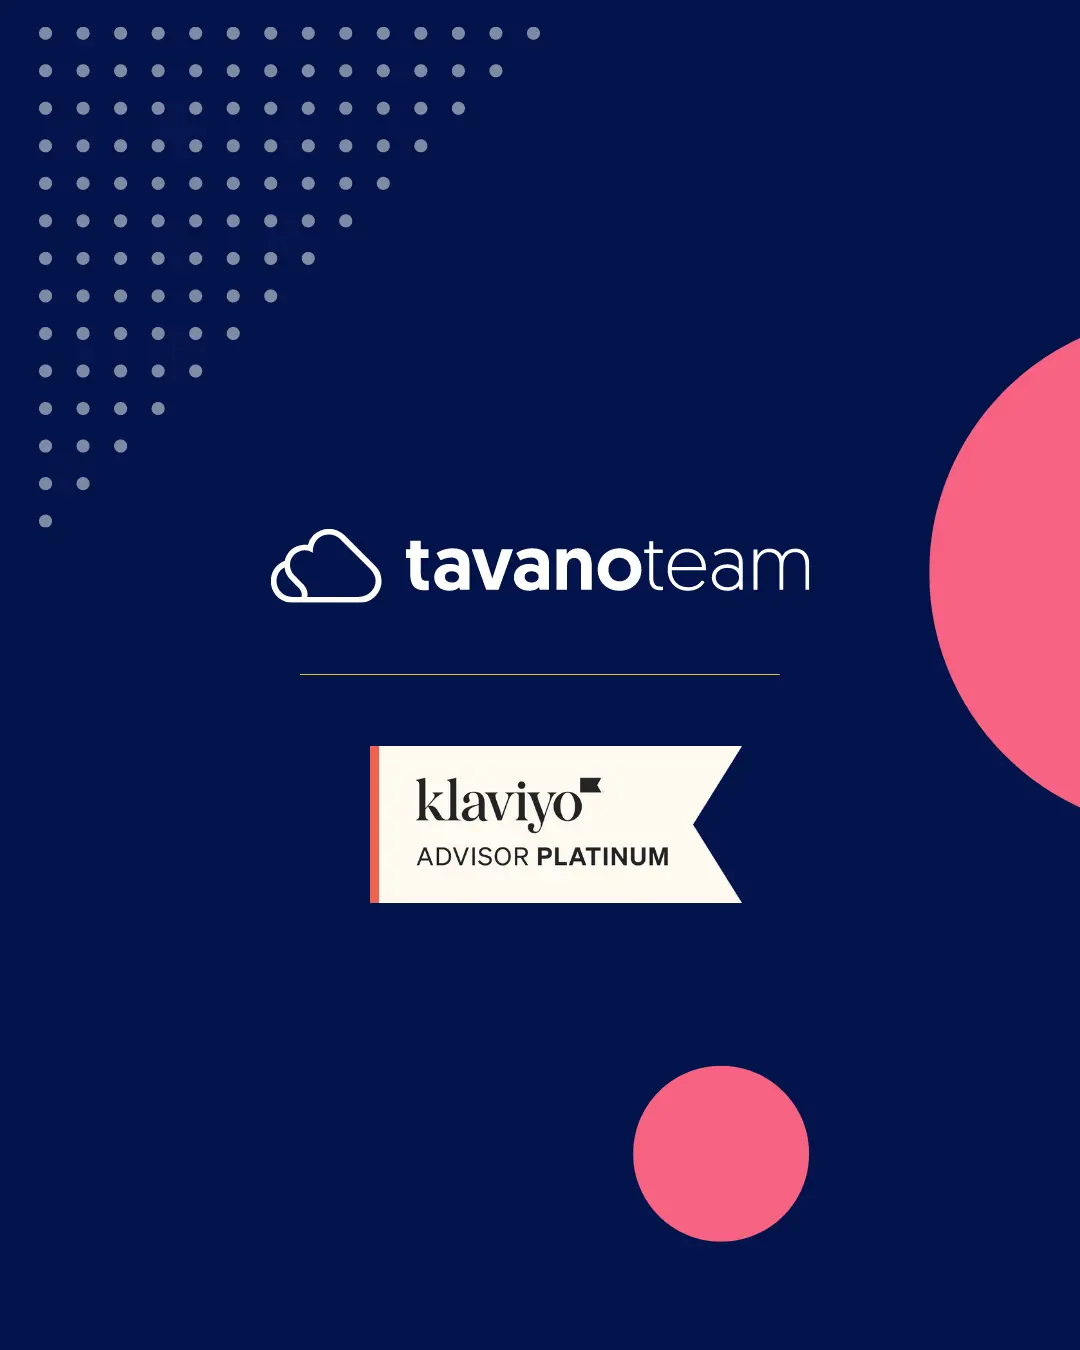 Klaviyo-Tavanoteam-partnership